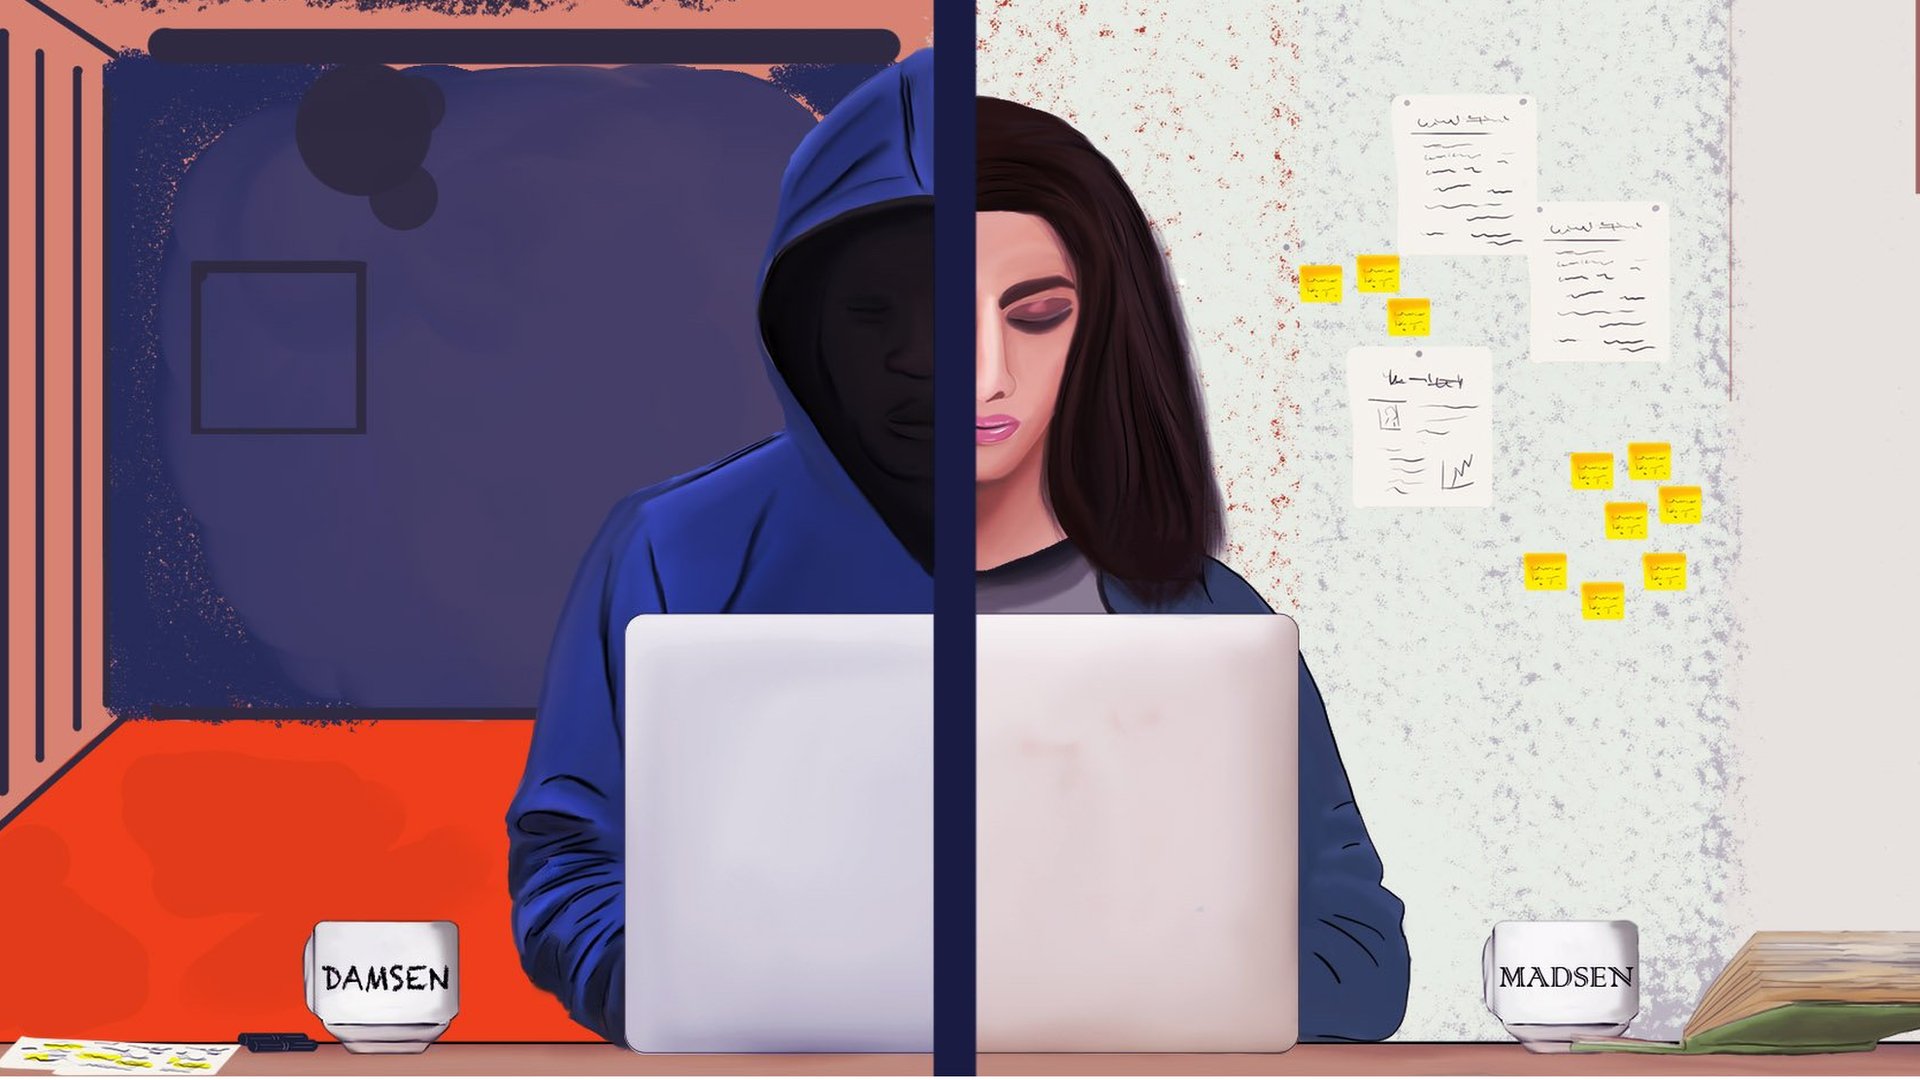 Иллюстрация Мишель Мэдсен за ноутбуком на одной половине изображения и фигура с капюшоном, представляющая Мишель Дамсен, на другой.